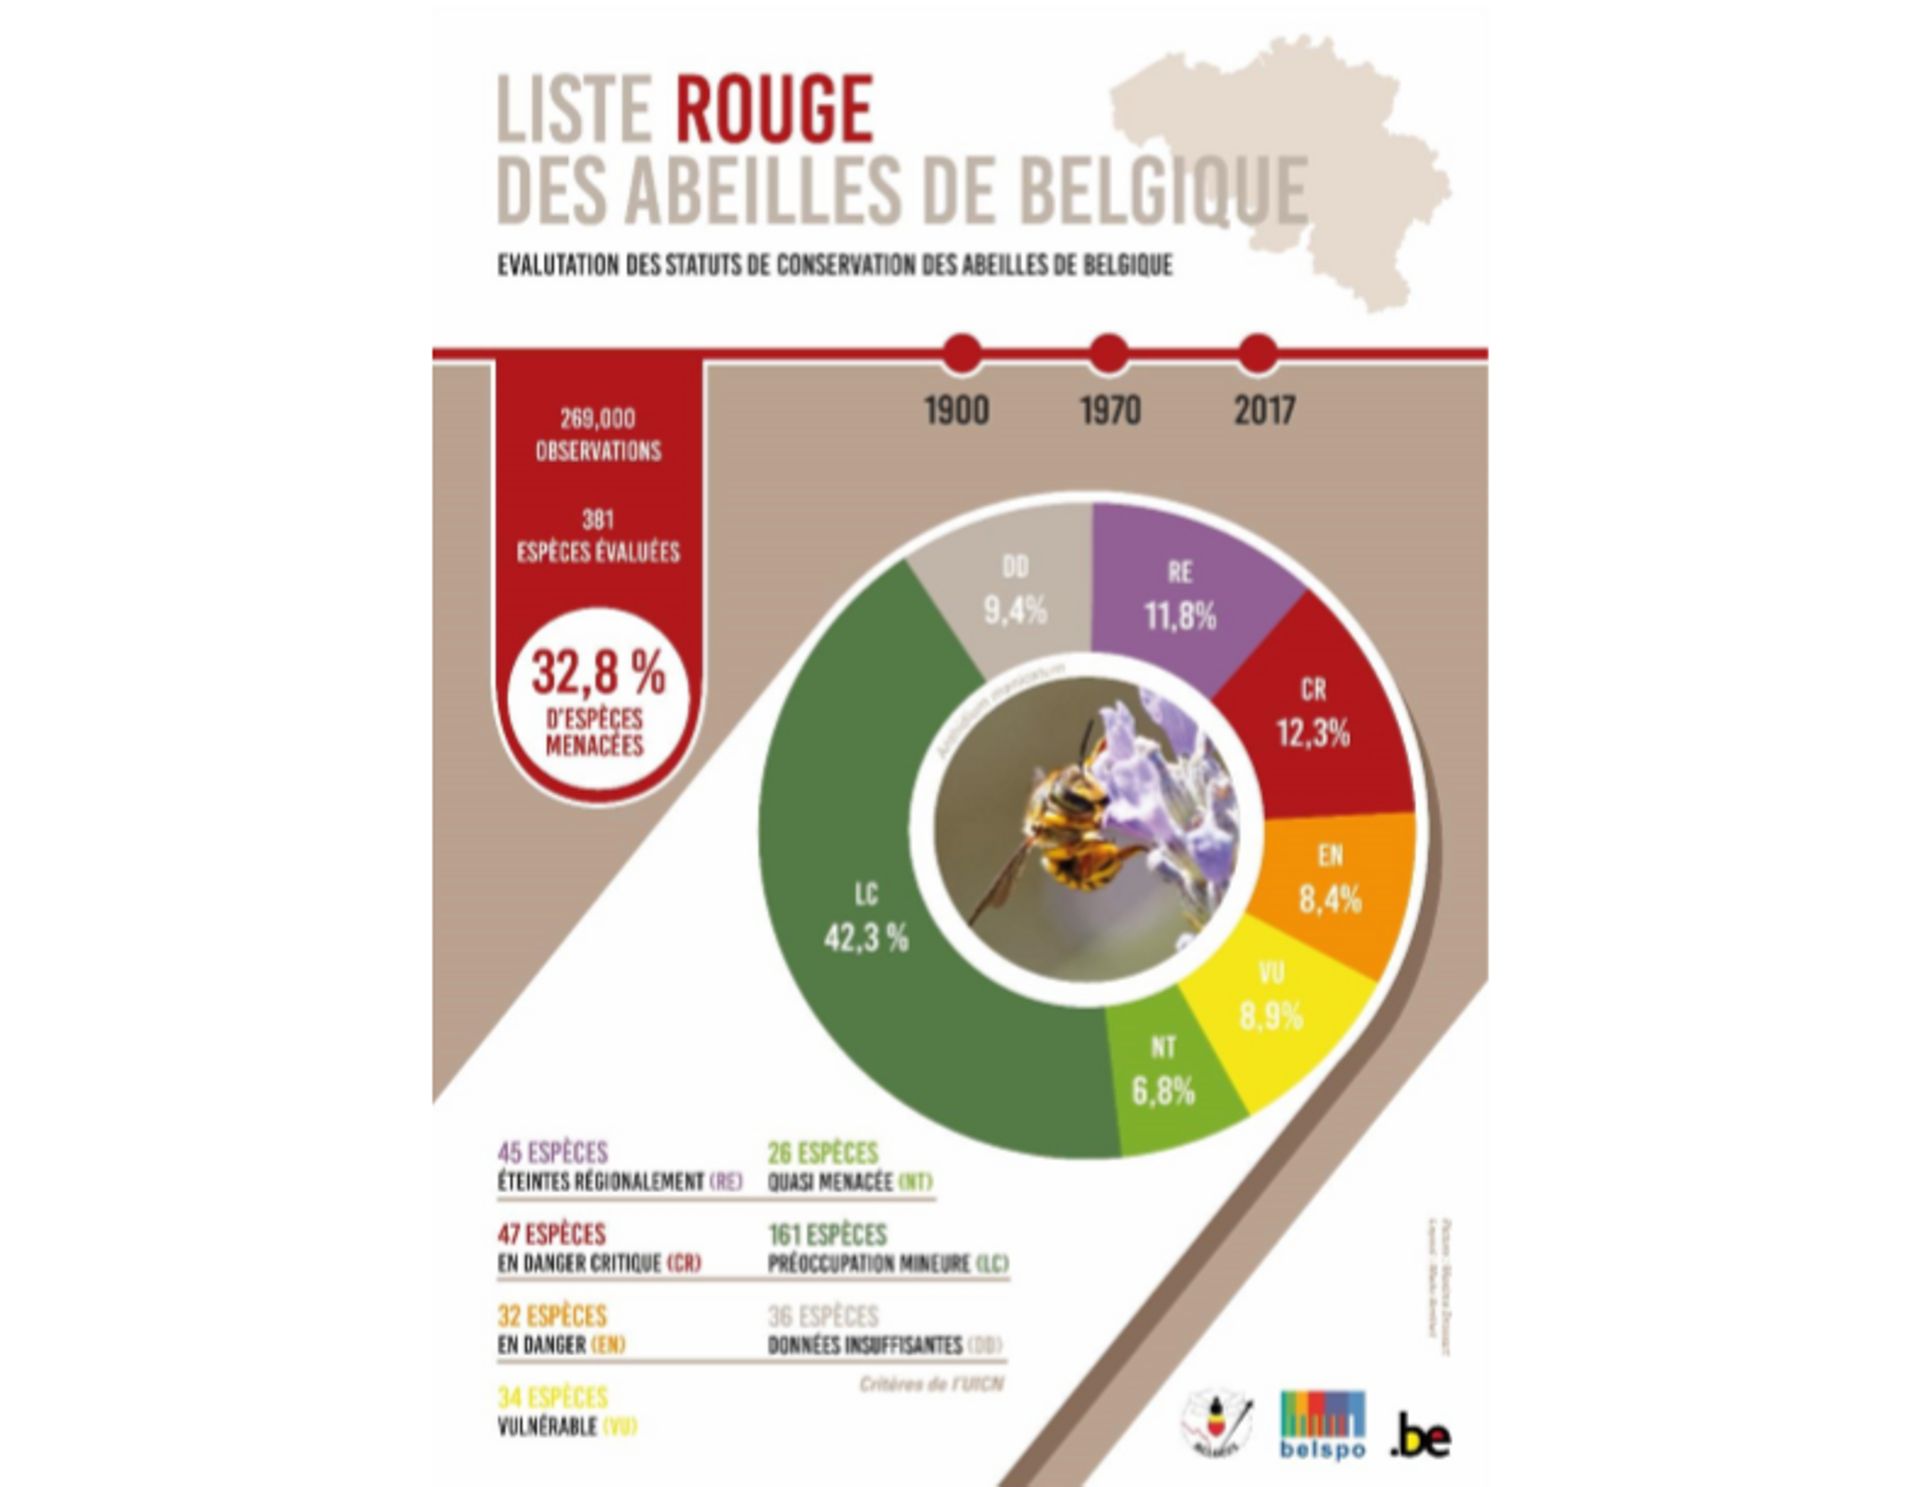 "La liste rouge des abeilles", un rapport alarmant sur les abeilles sauvages de Belgique